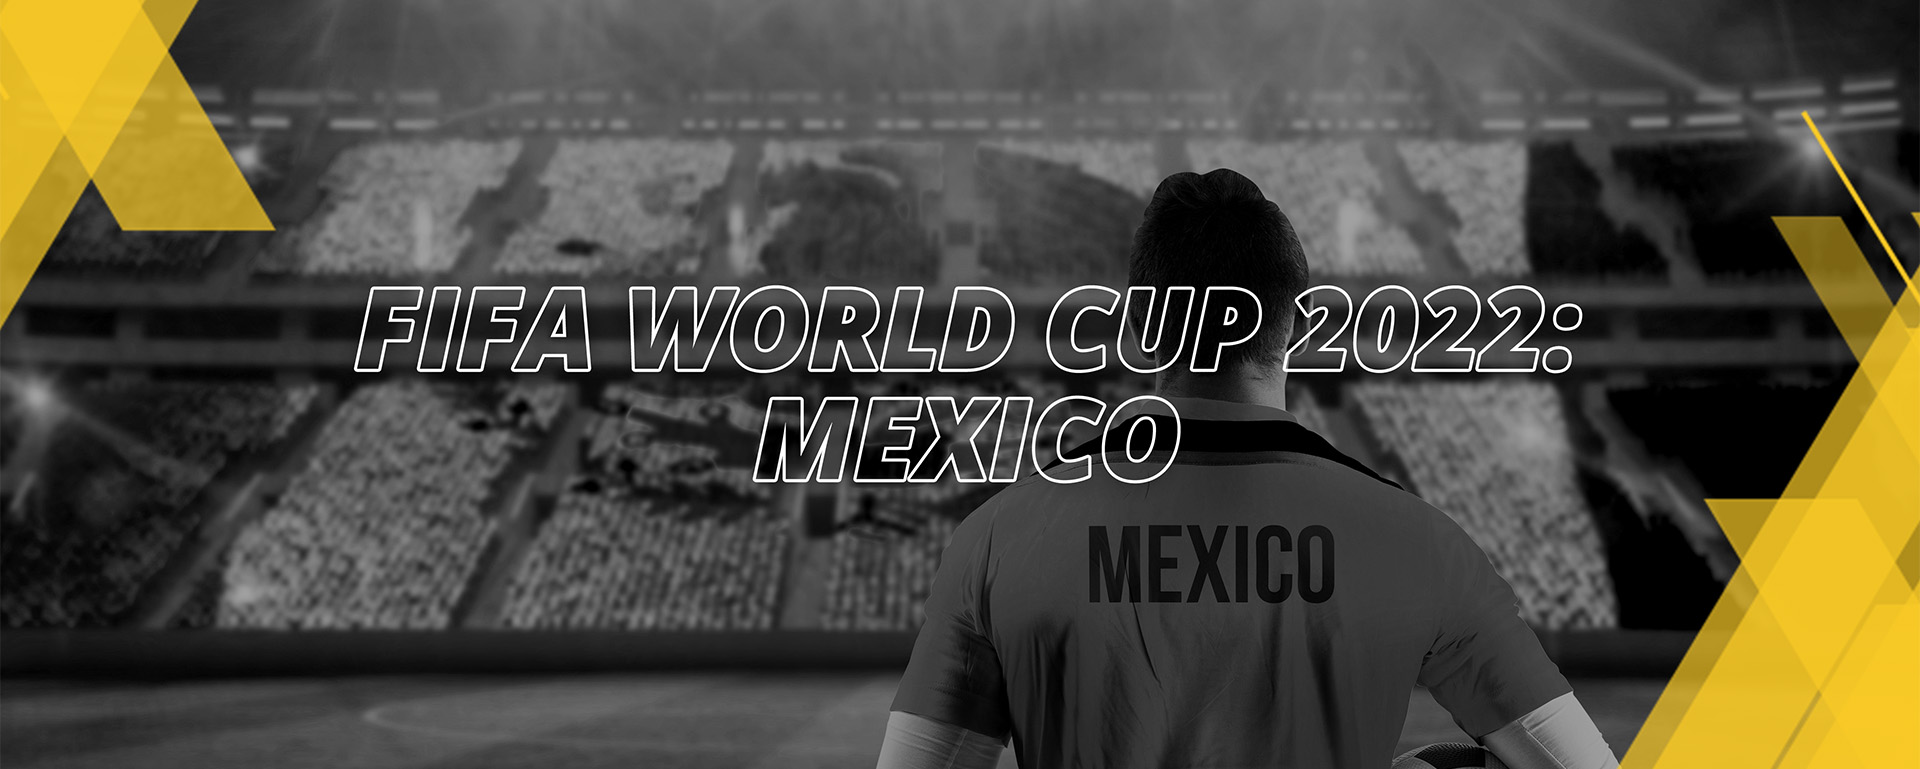 MEXICO – FIFA WORLD CUP QATAR 2022 – FAN’S COMPENDIUM